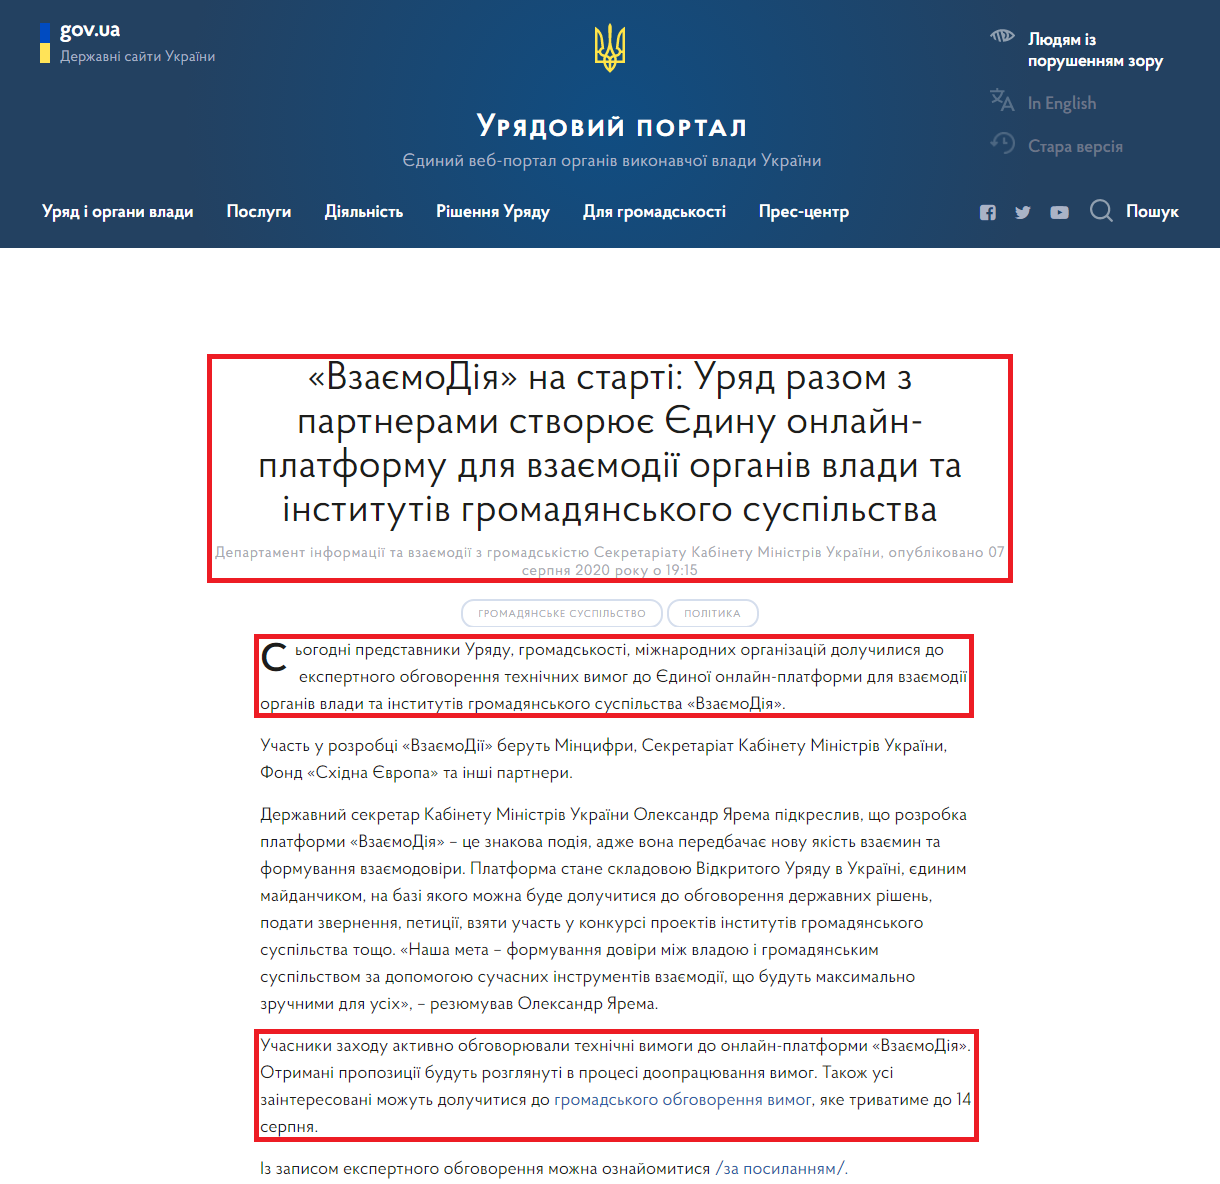 https://www.kmu.gov.ua/news/vzayemodiya-na-starti-uryad-razom-z-partnerami-stvoryuye-yedinu-onlajn-platformu-dlya-vzayemodiyi-organiv-vladi-ta-institutiv-gromadyanskogo-suspilstva